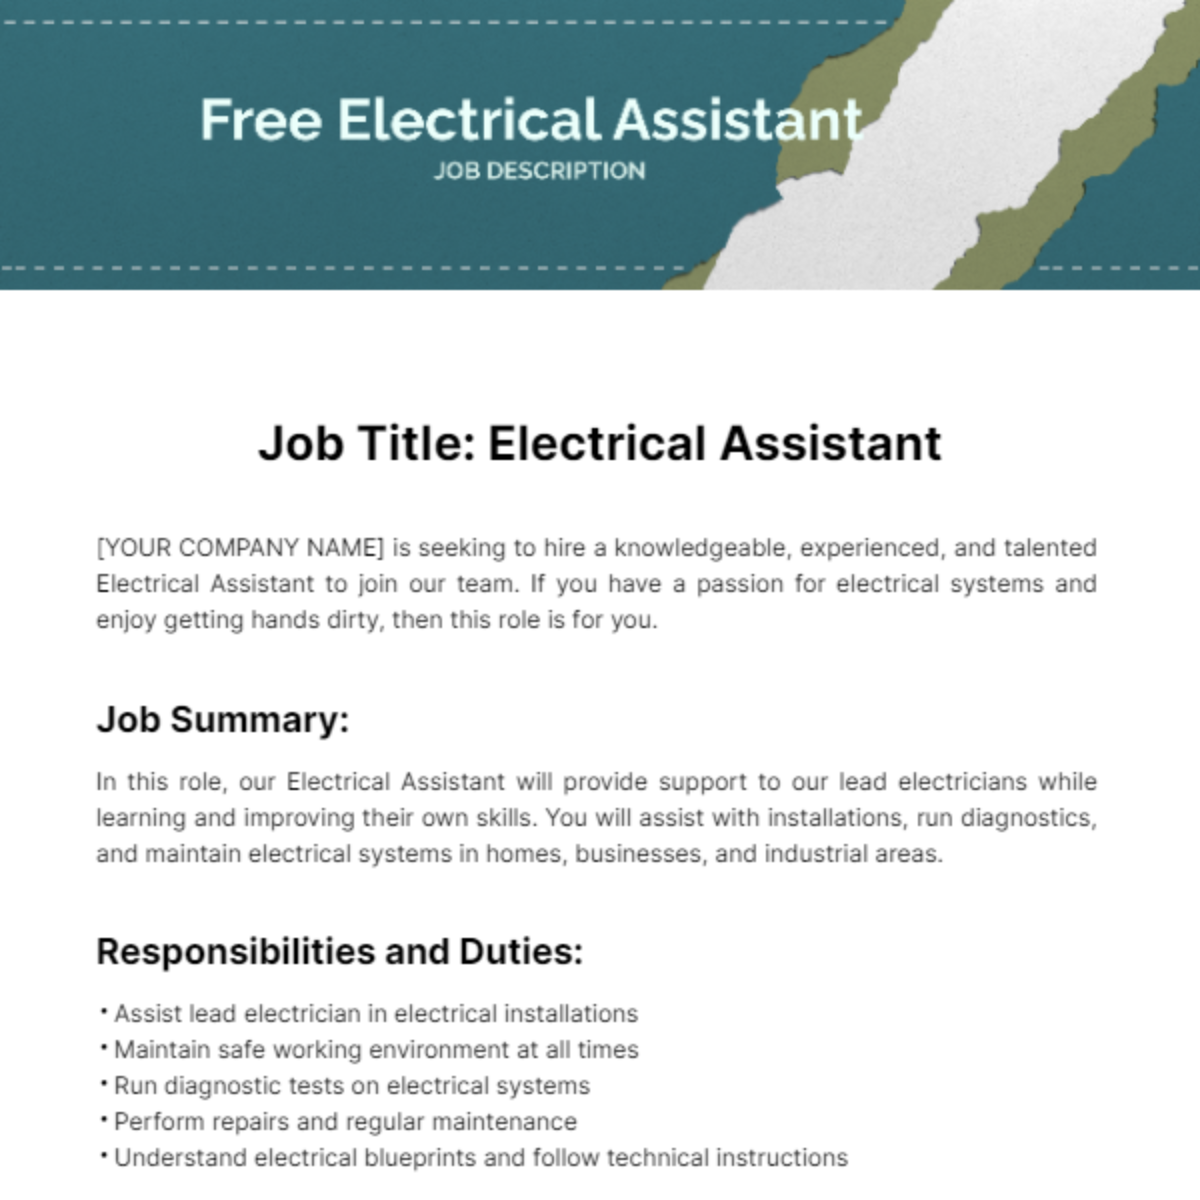 Free Electrical Assistant Job Description Template